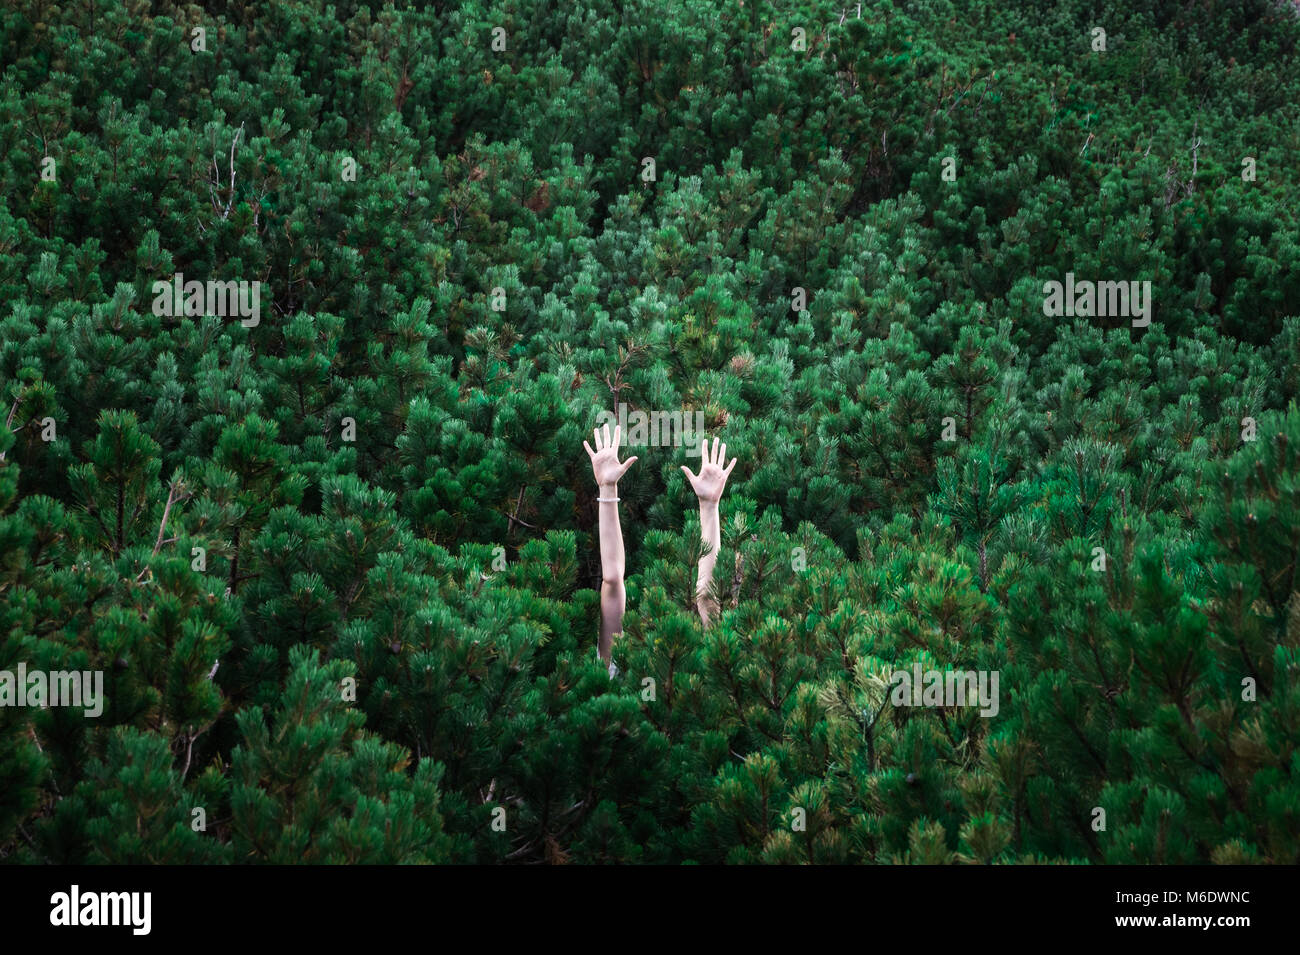 Abstraktes Bild von Personen, Hände hoch gestiegen unter grünen reichen Fell Bäume, die komplette Hintergrund sichtbar machen Stockfoto